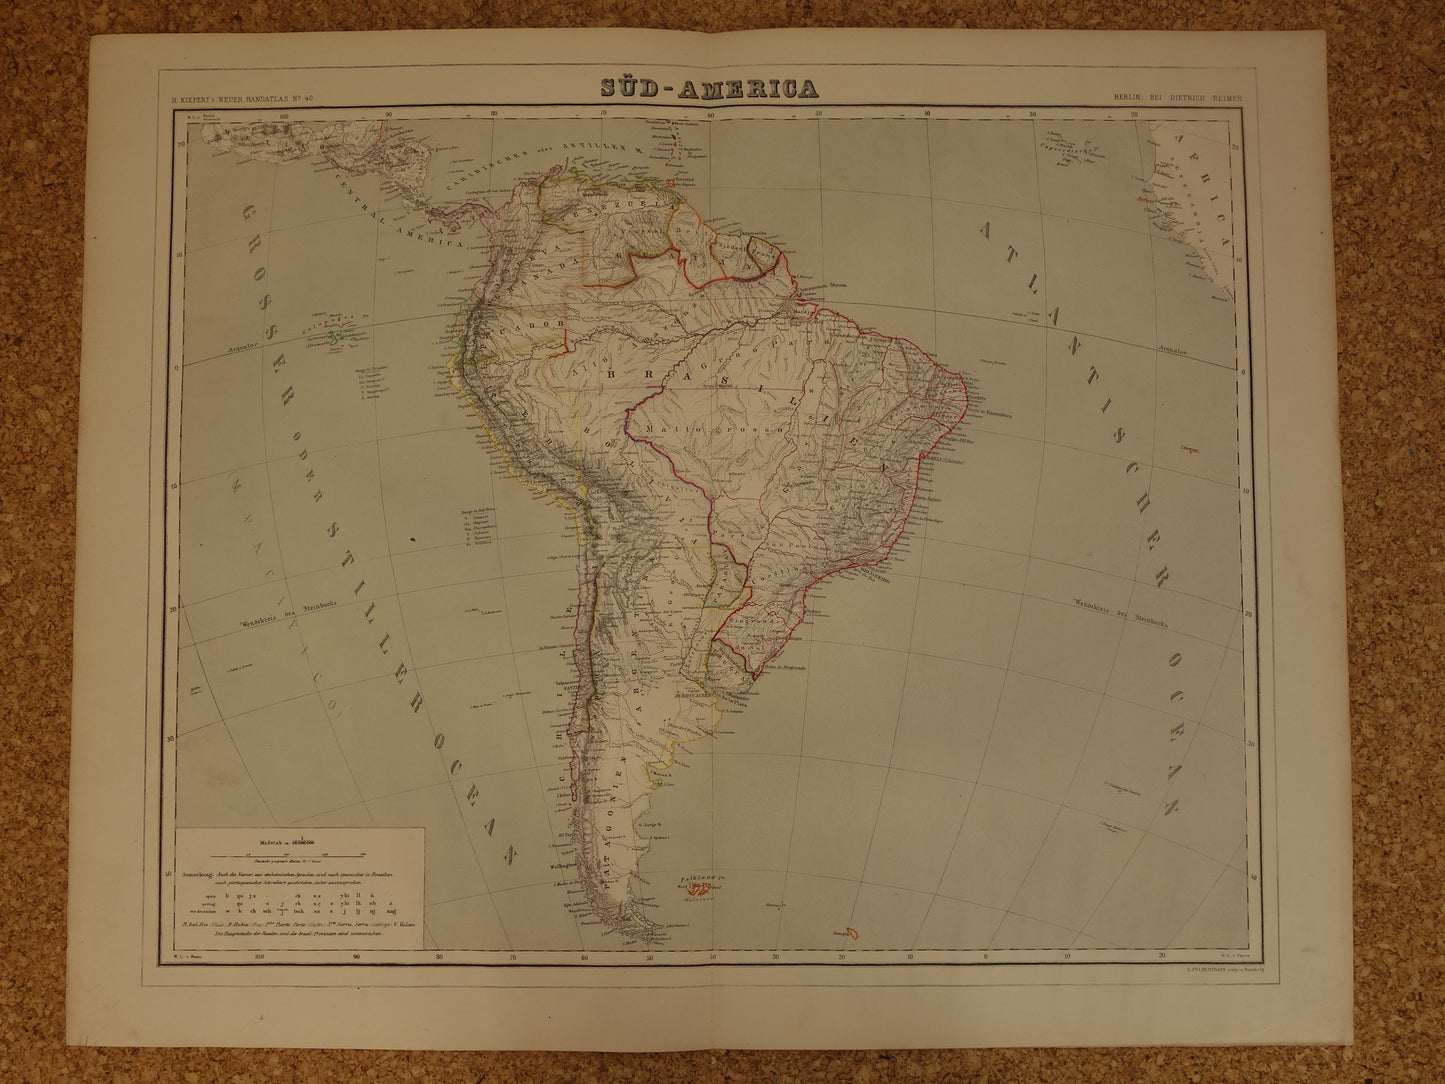 ZUID-AMERIKA Grote oude kaart van Zuid-Amerika uit 1860 originele antieke landkaart Patagonië Brazilië Argentinië Suriname vintage poster